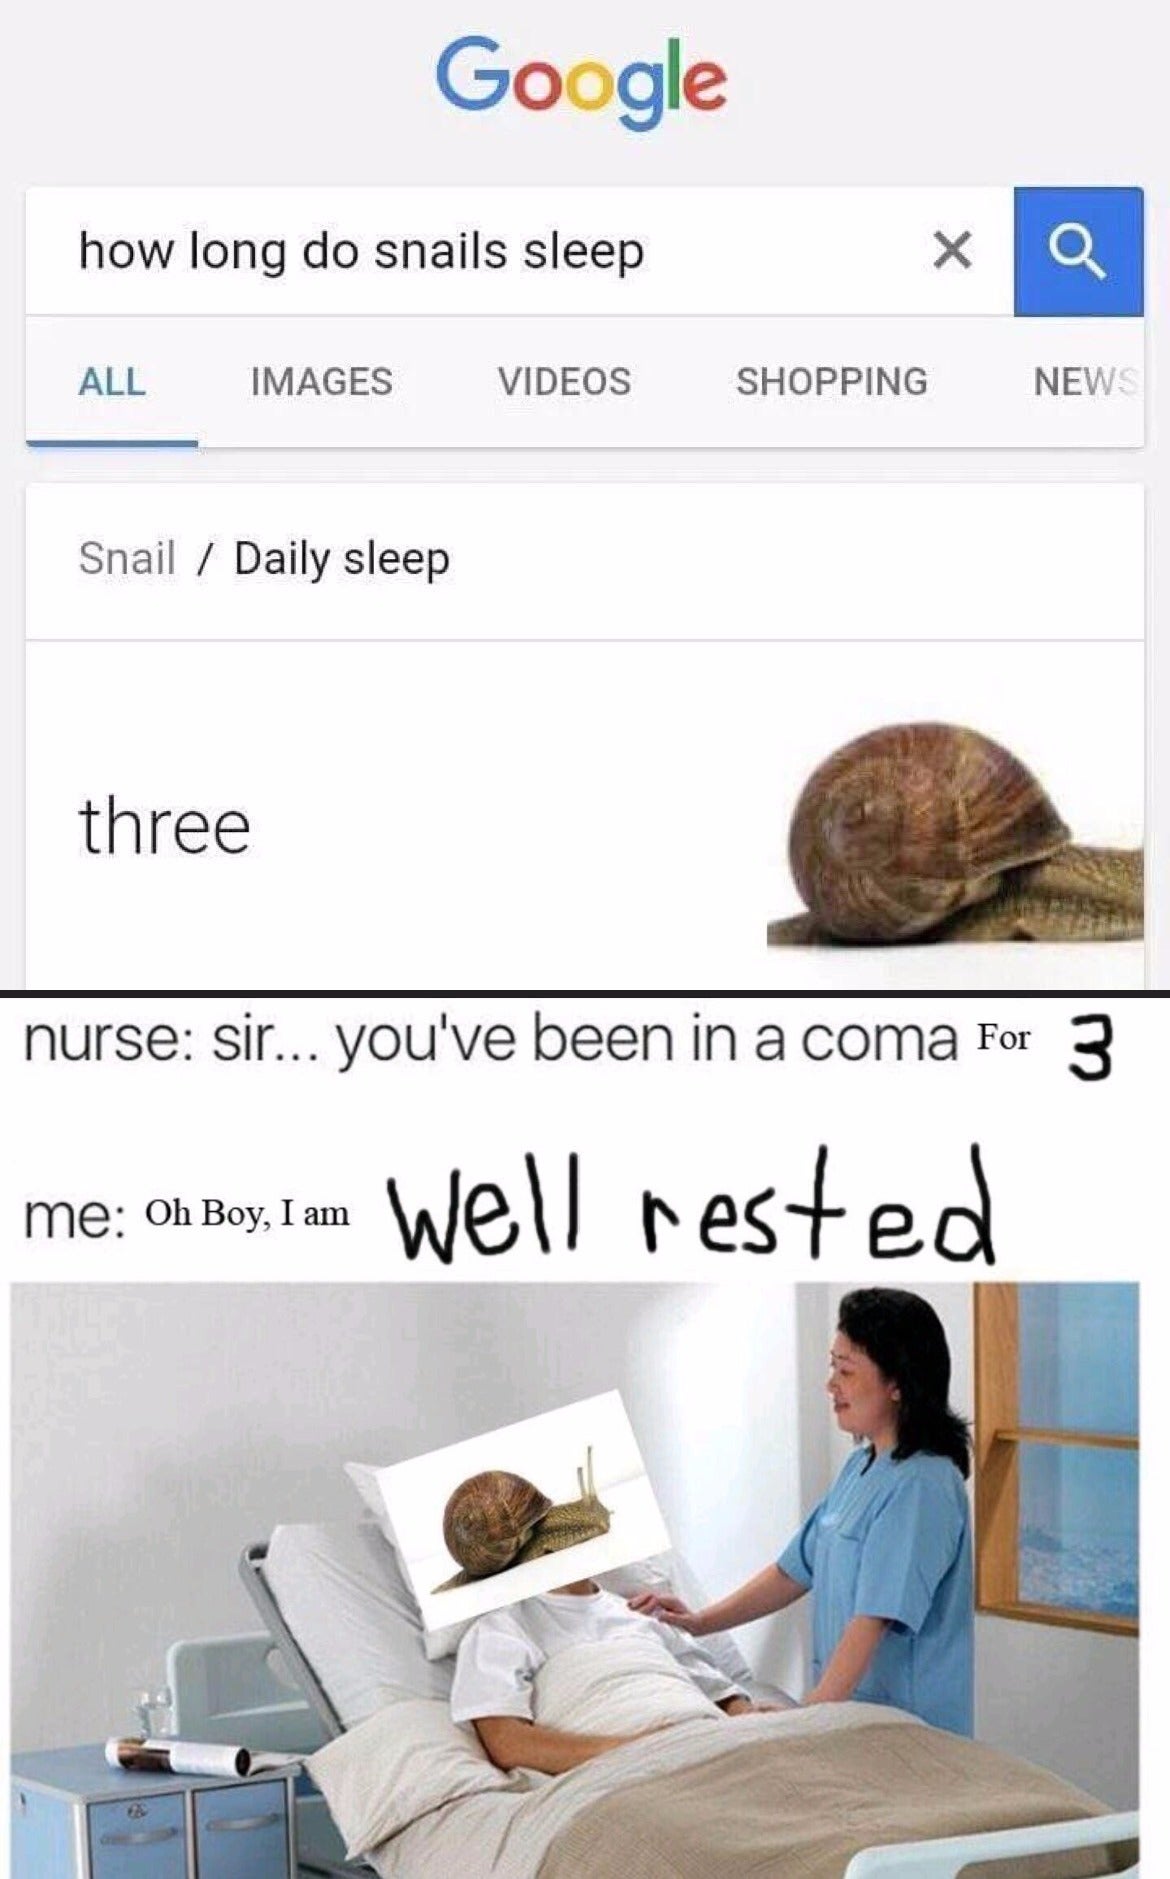 How long can a snail sleep riddle?